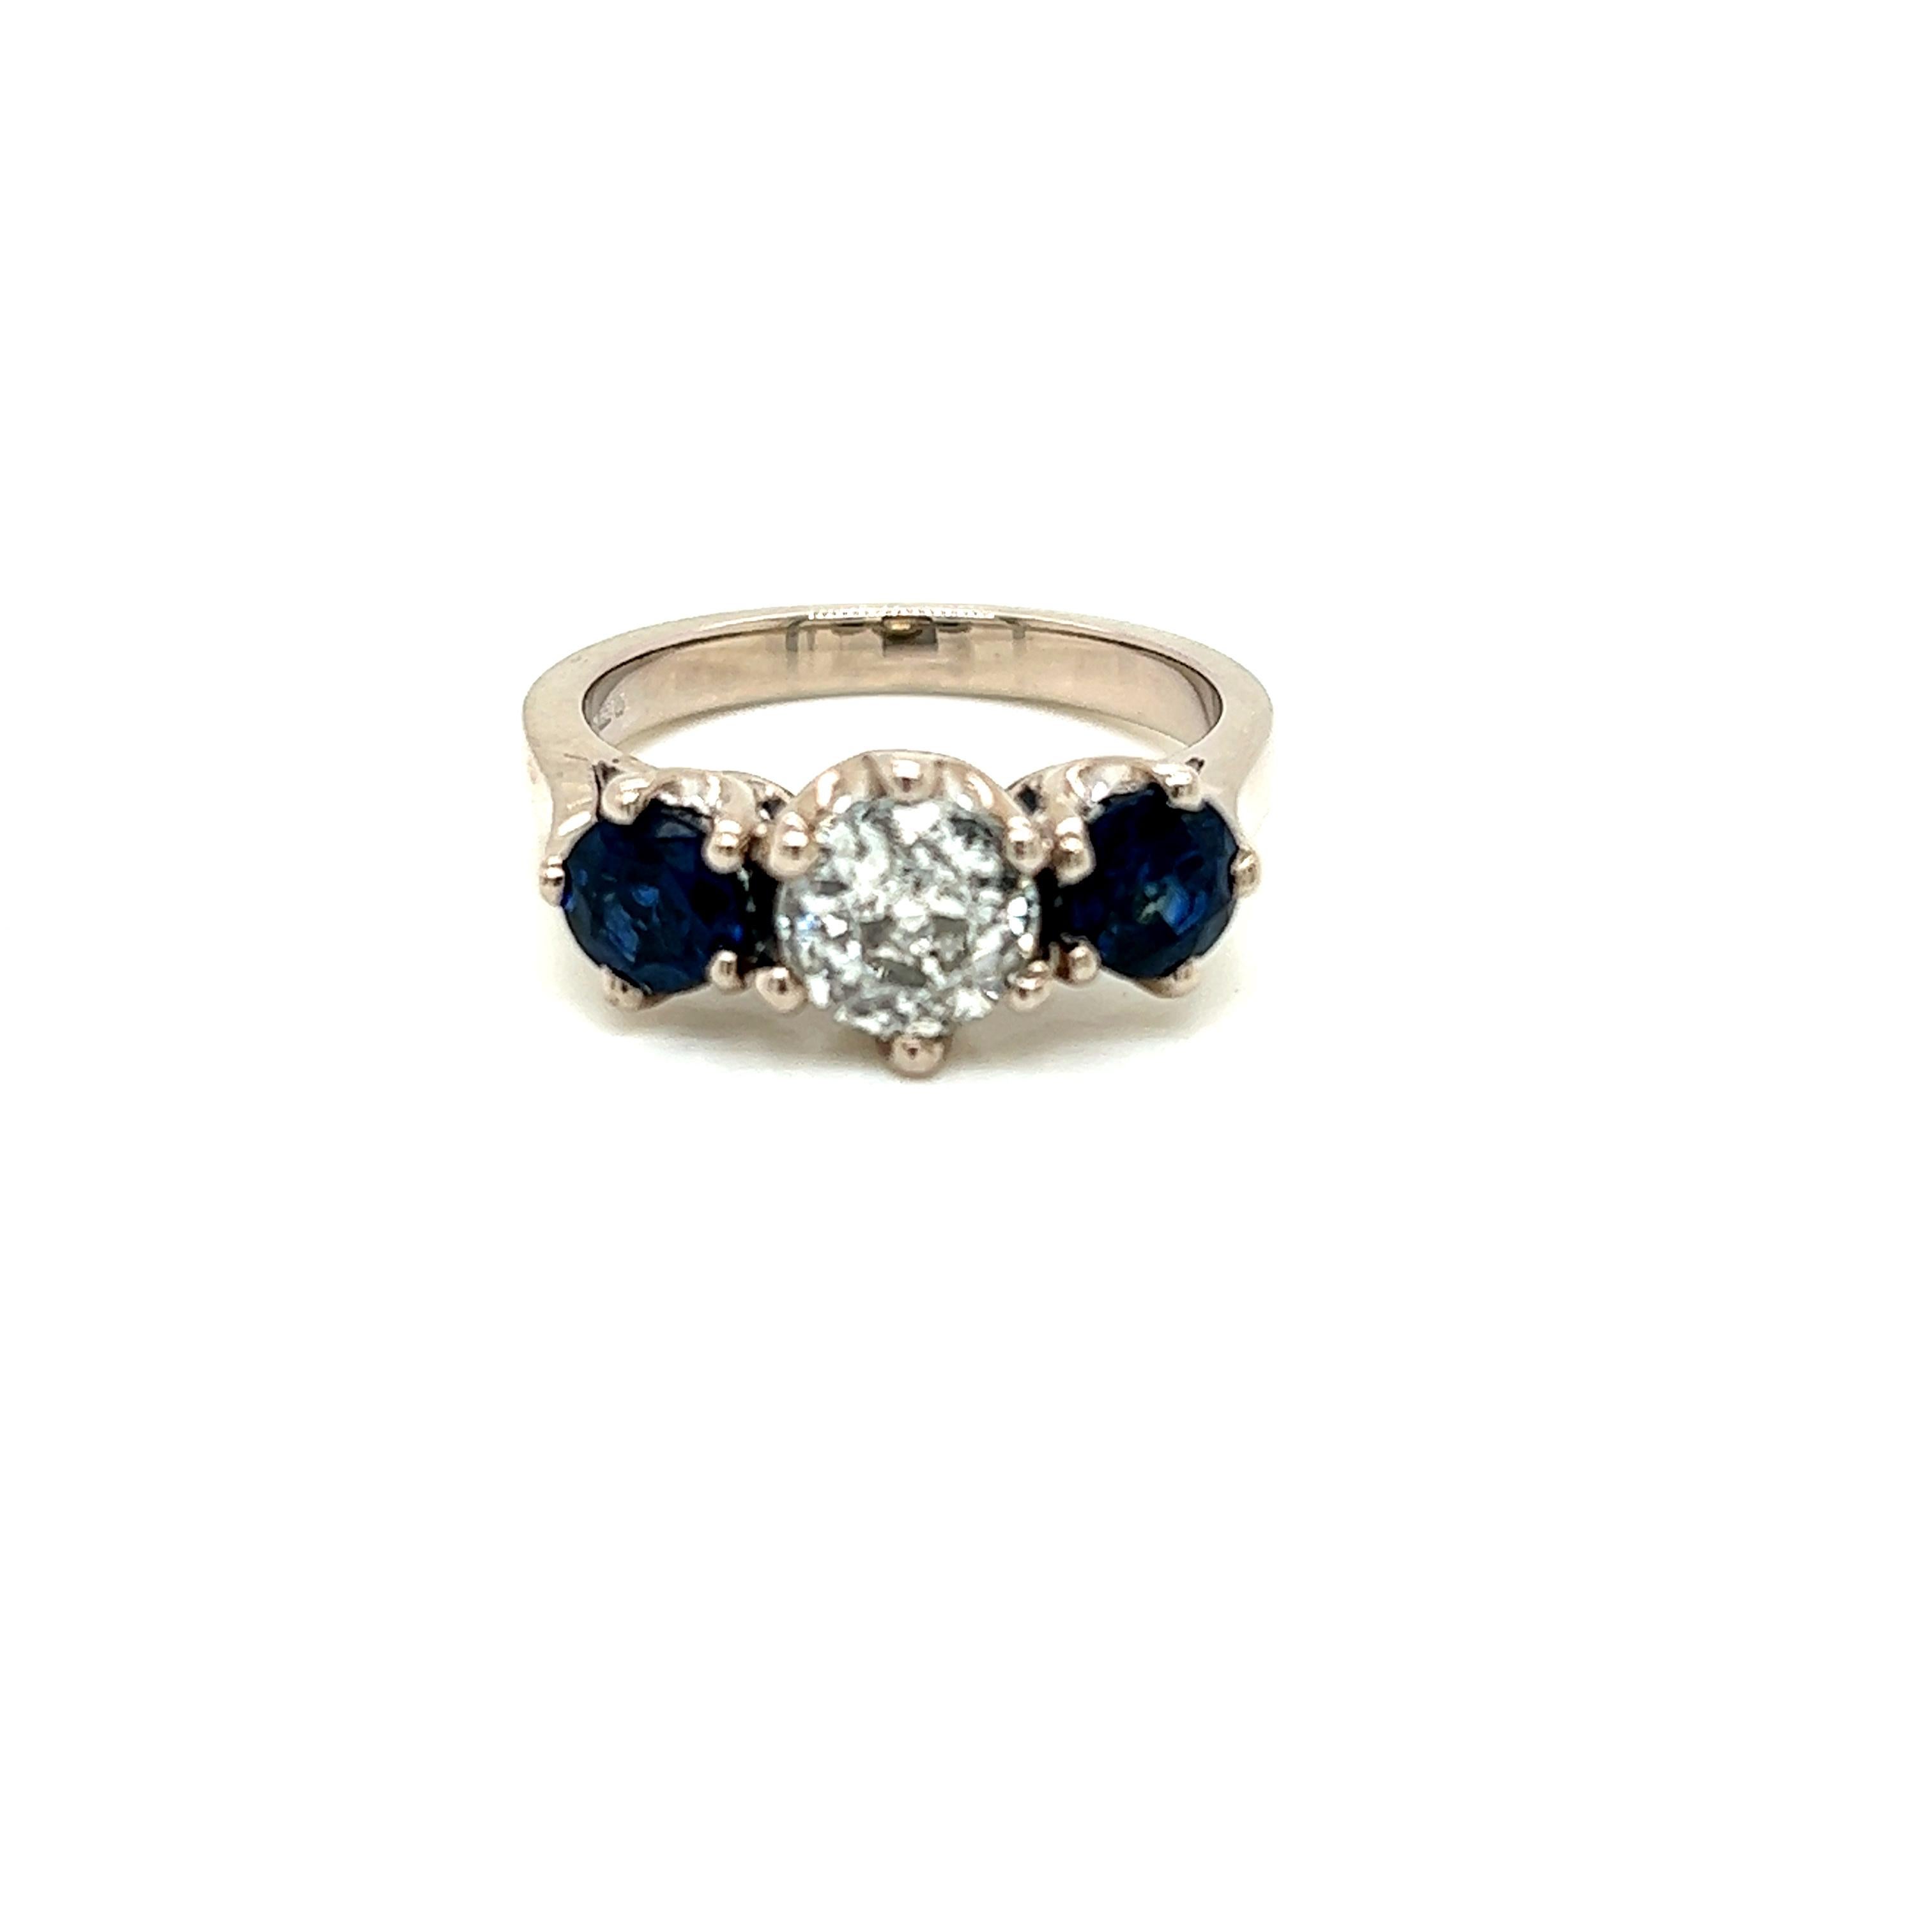 Dieser bezaubernde Ring ist mit einem schönen runden Brillanten von 0,85 Karat und einem runden blauen Brillantsaphir an beiden Seiten des Rings auf einem Band aus 18 Karat Weißgold besetzt.

Der Diamant in der Mitte des Rings wiegt 0,85 Karat und